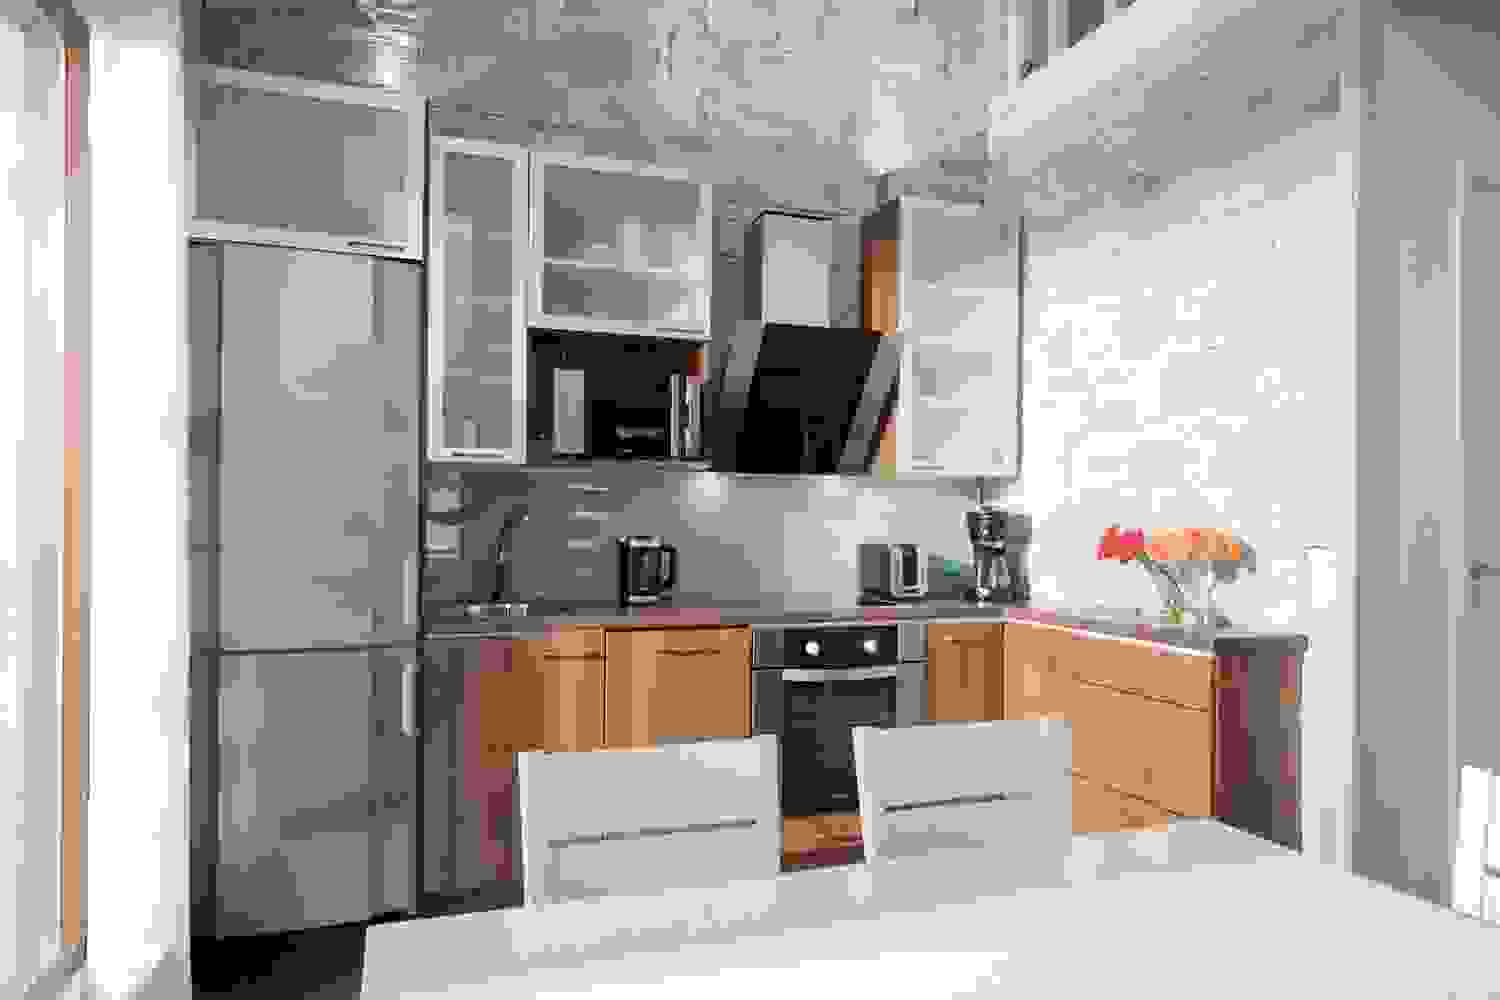 aurinkopaikka-kitchen-3.jpg